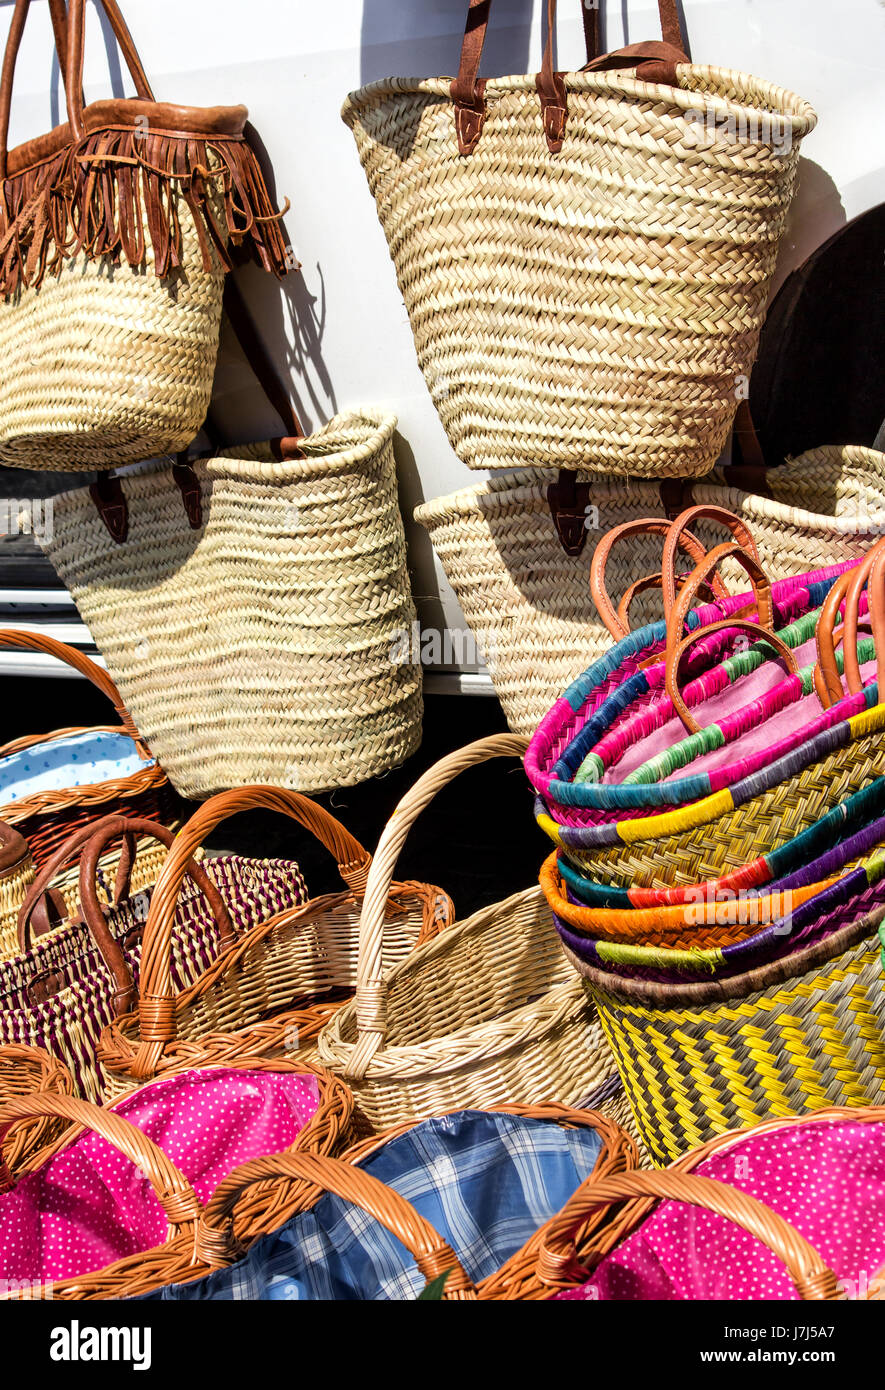 Shopping per colorata borse di paglia e vimini tessuto cesti Foto